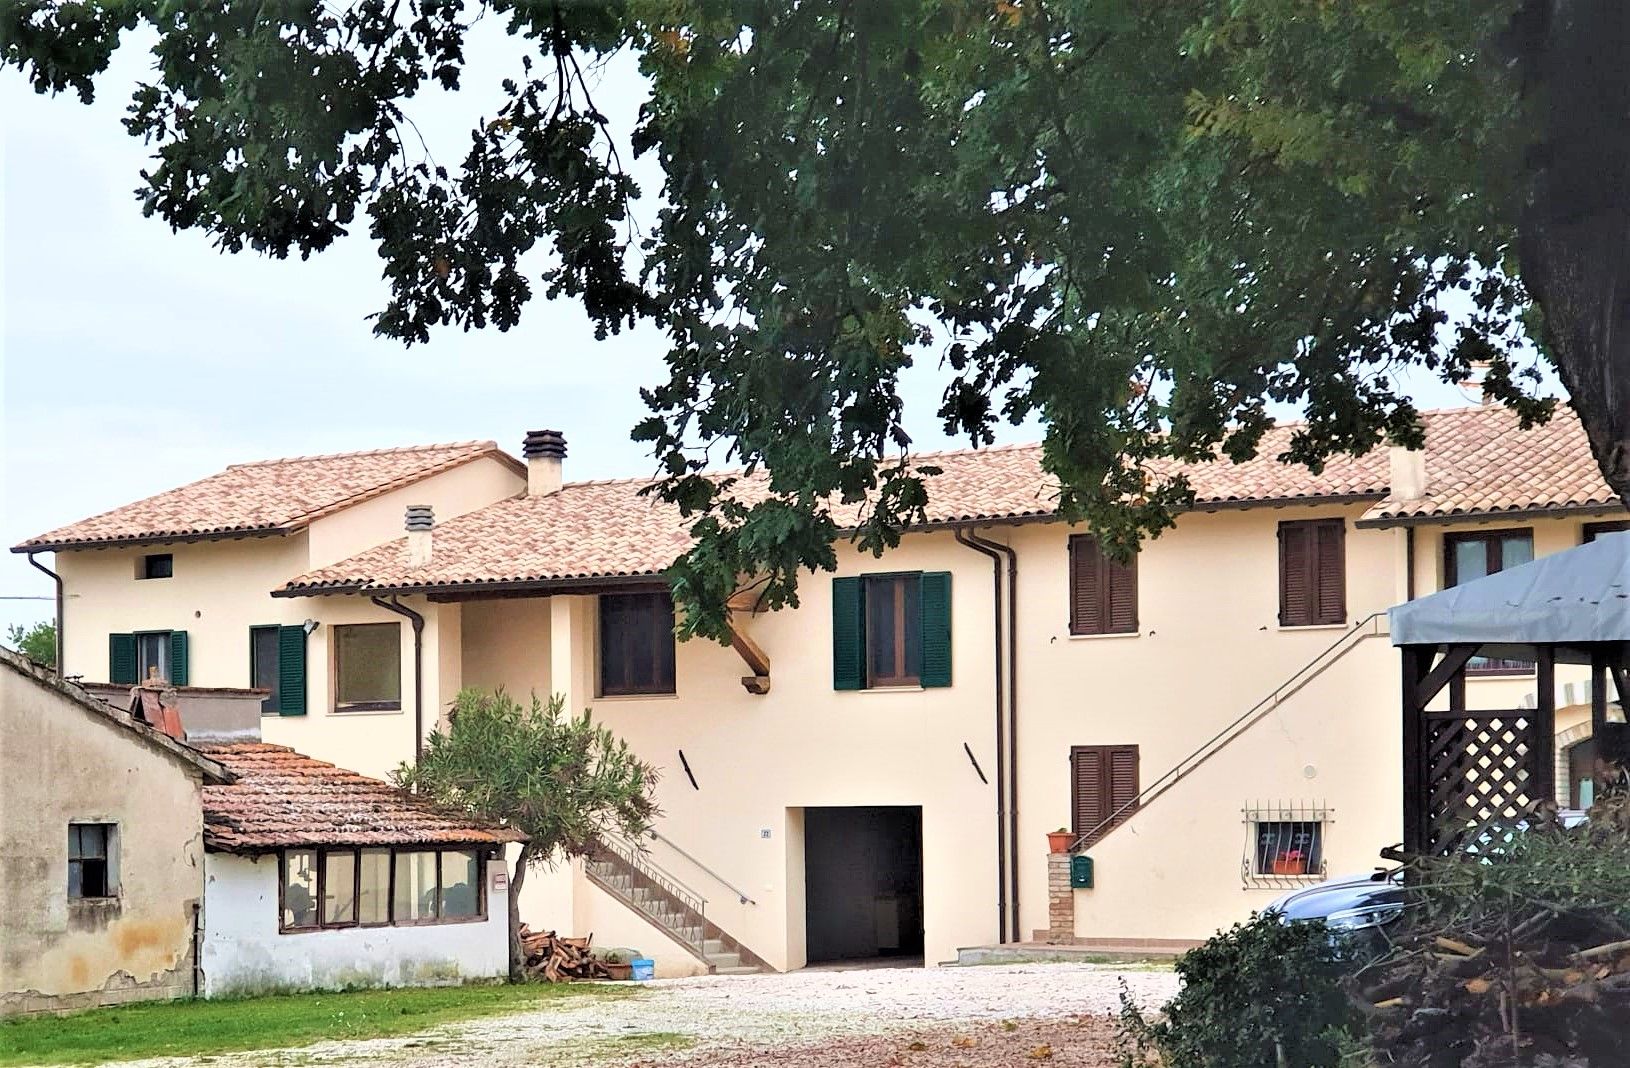 Villa Bifamiliare in vendita a Bettona, 6 locali, prezzo € 180.000 | PortaleAgenzieImmobiliari.it